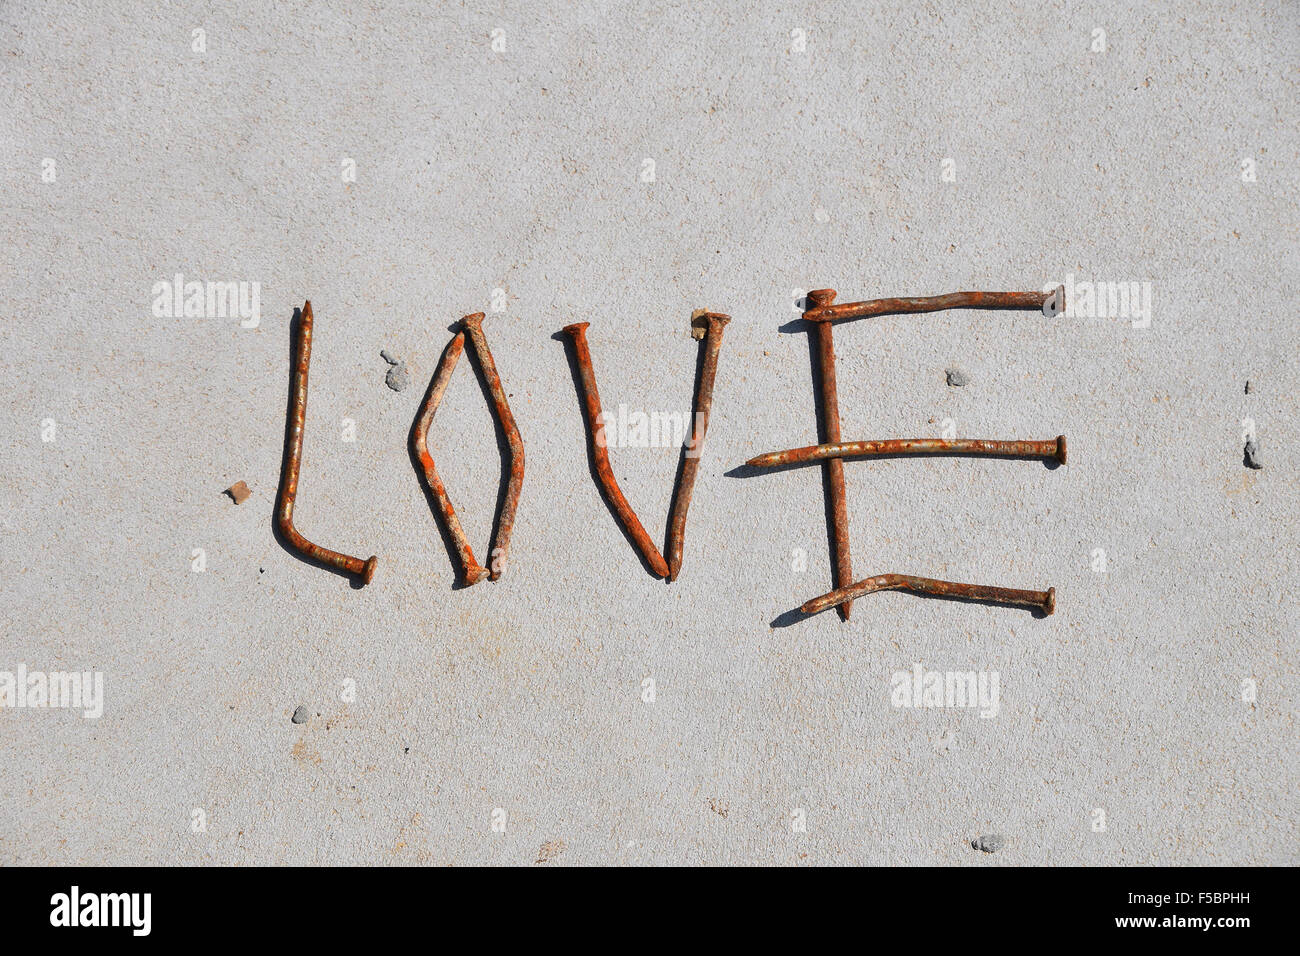 Liebe Wort gebildet von rostigen Nägeln auf grauem Beton Hintergrund Stockfoto